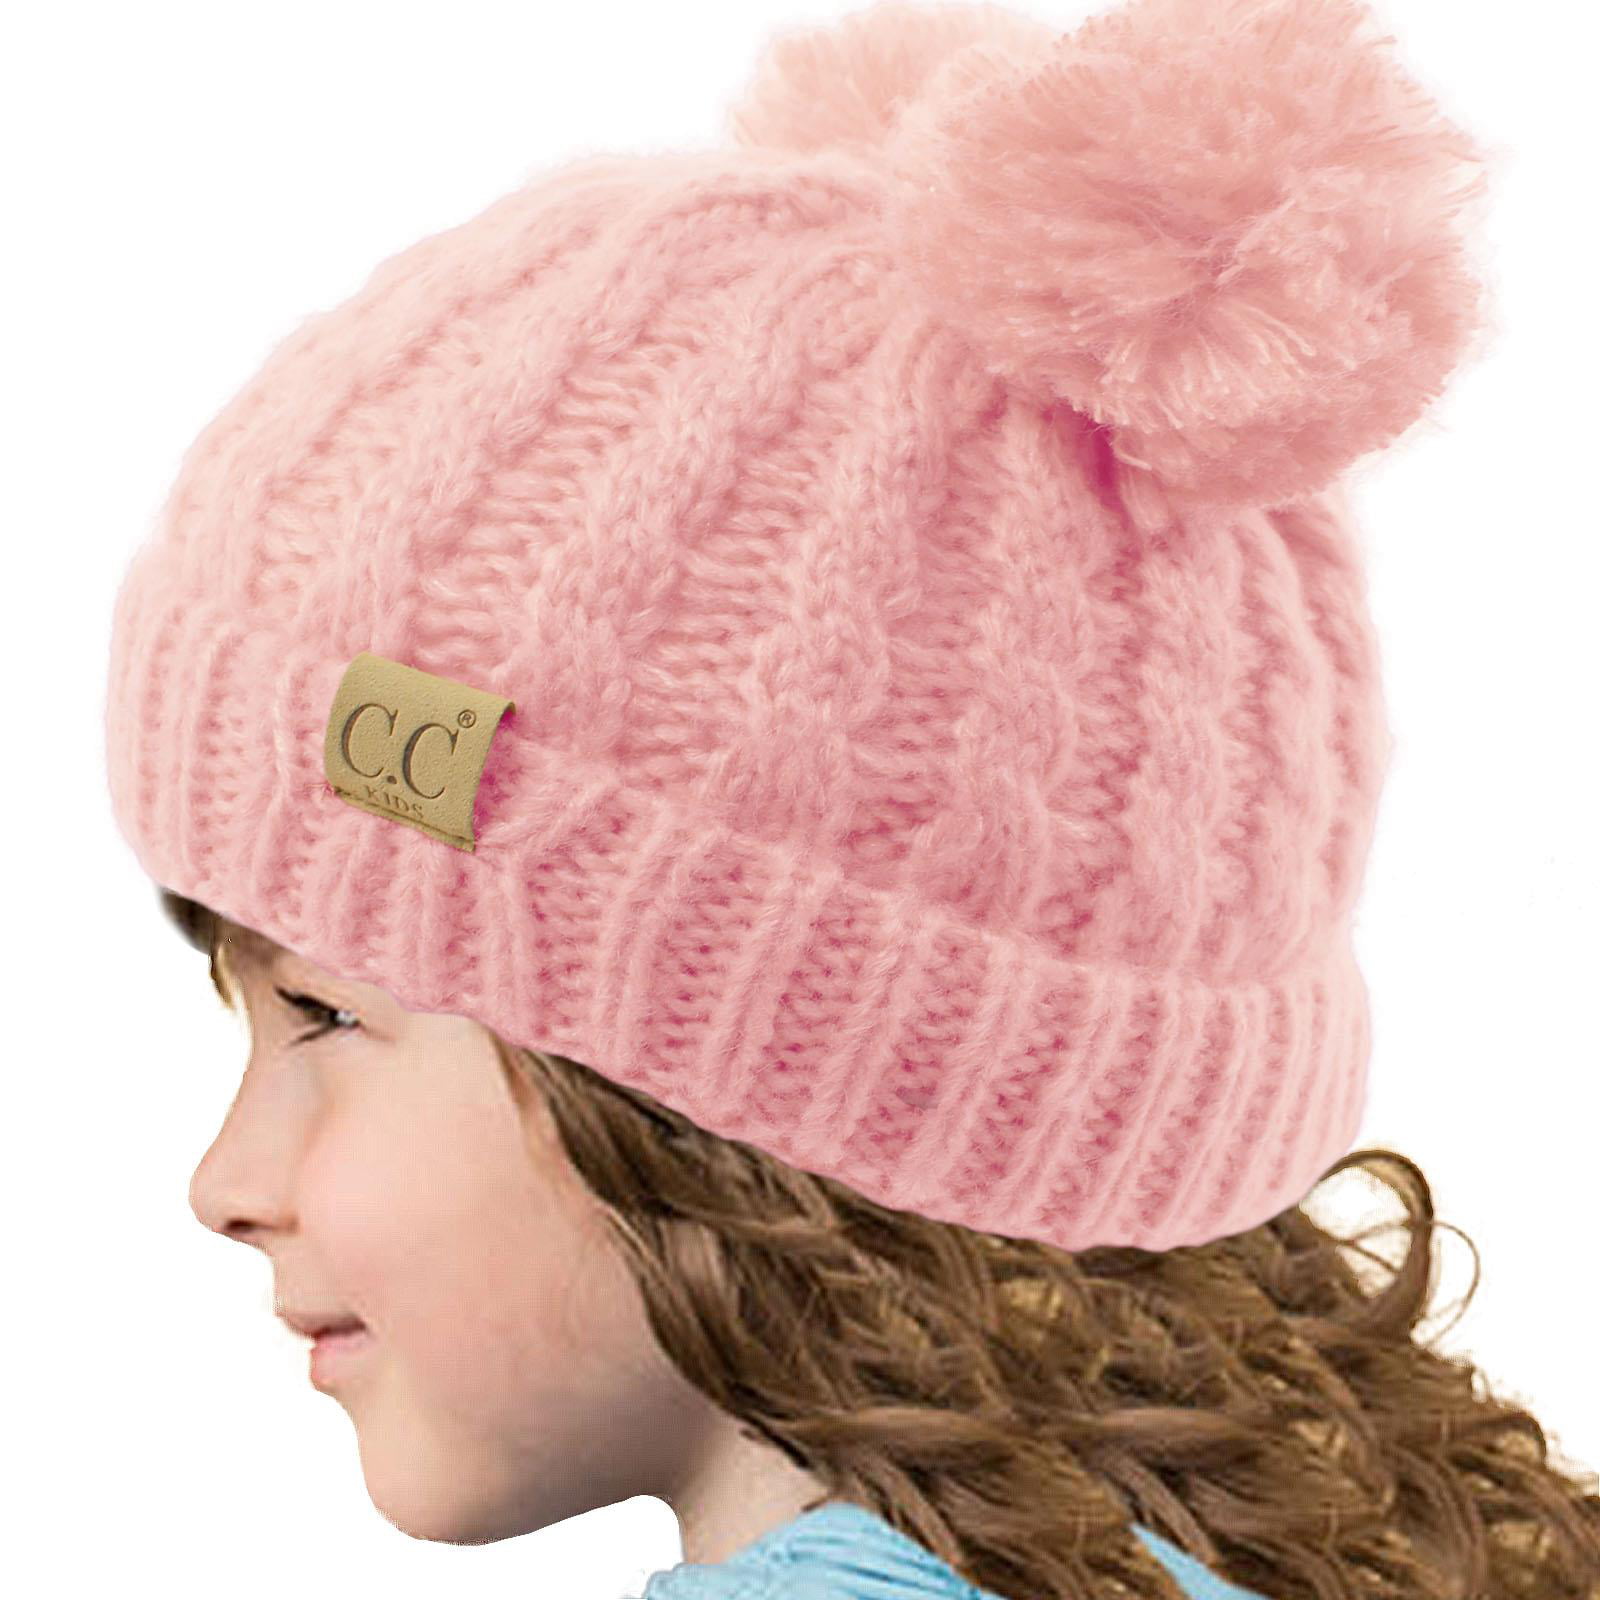 Knit hat pink Knit hat pom pom Pink knit hat girl Unicorn kids hat Unicorn hat Knit hat kids Knit hat girls Knit hat girl winter